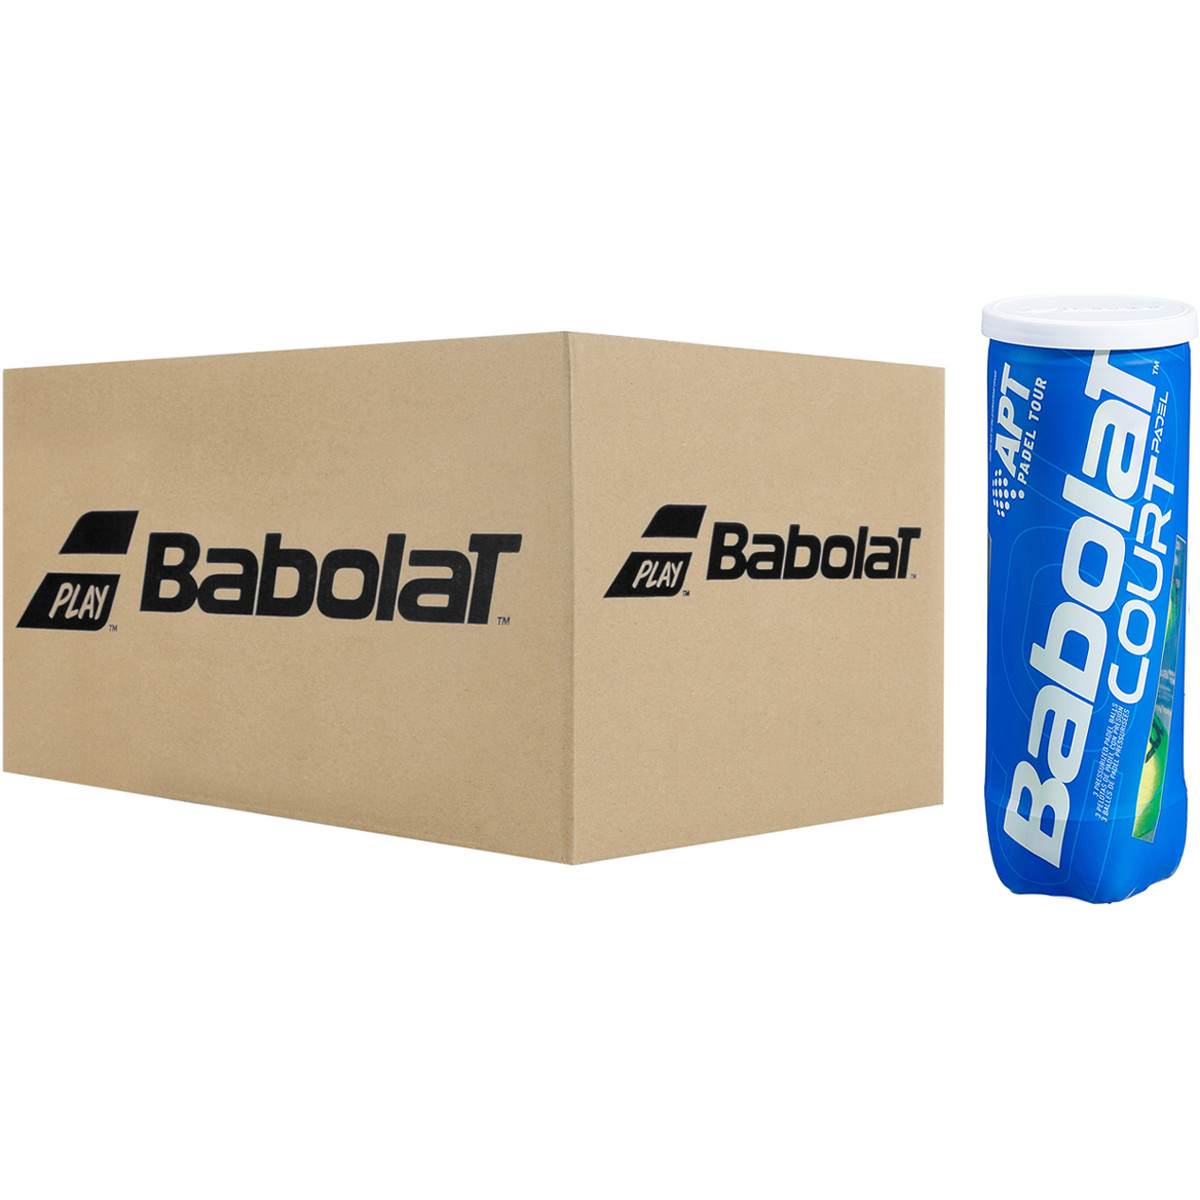 Balles de Padel Tour Babolat - Tube de 3 balle compétition